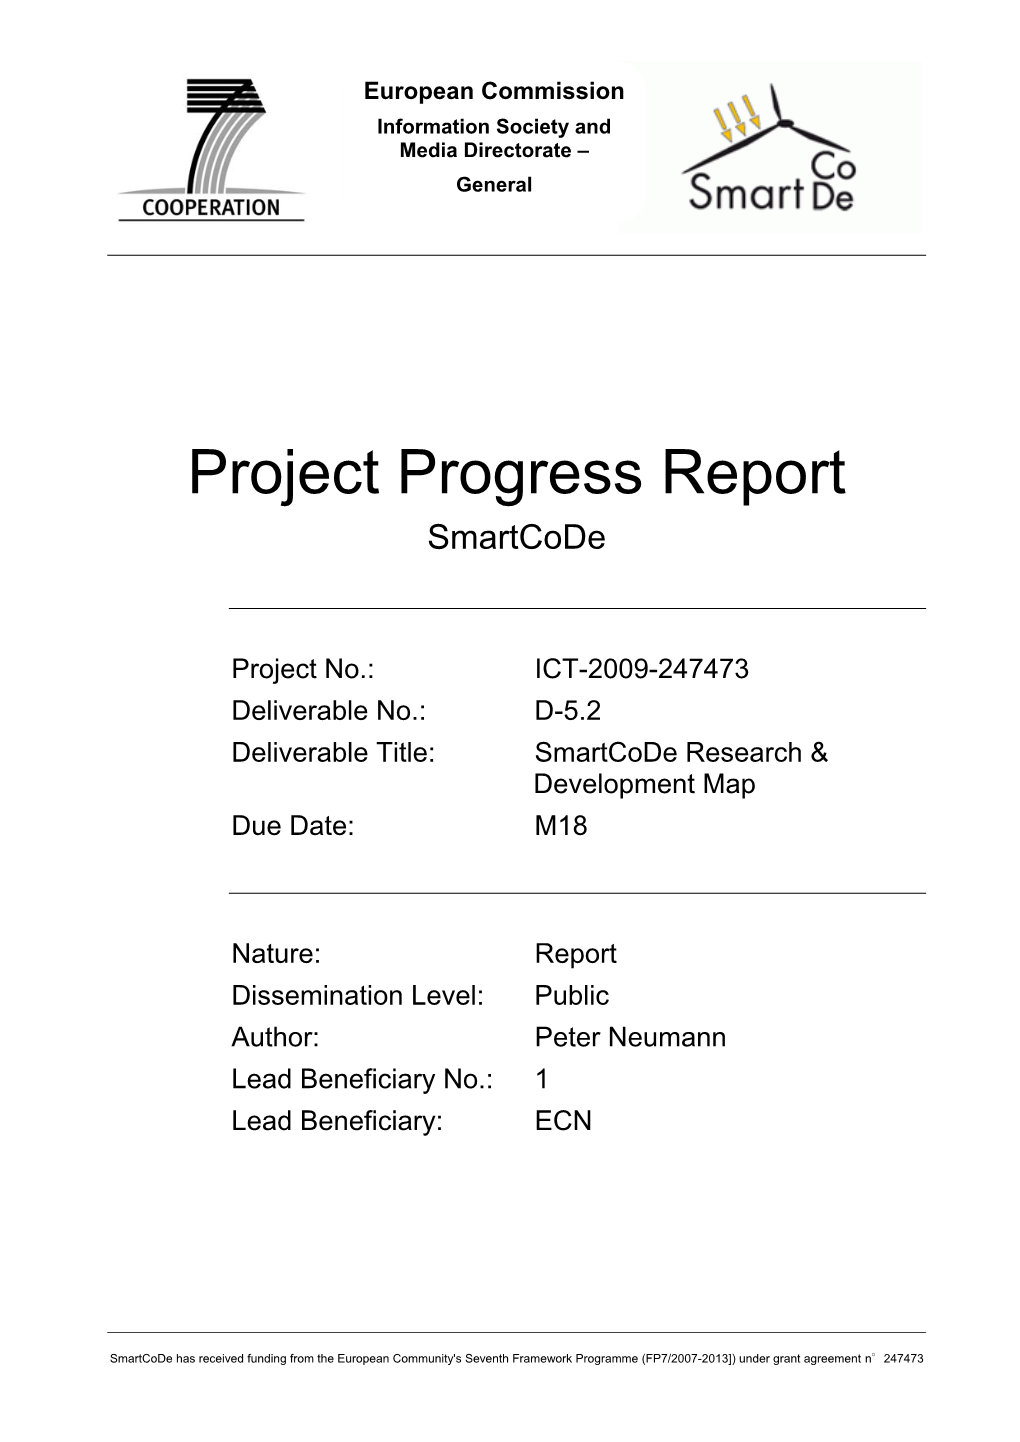 Project Progress Report Smartcode